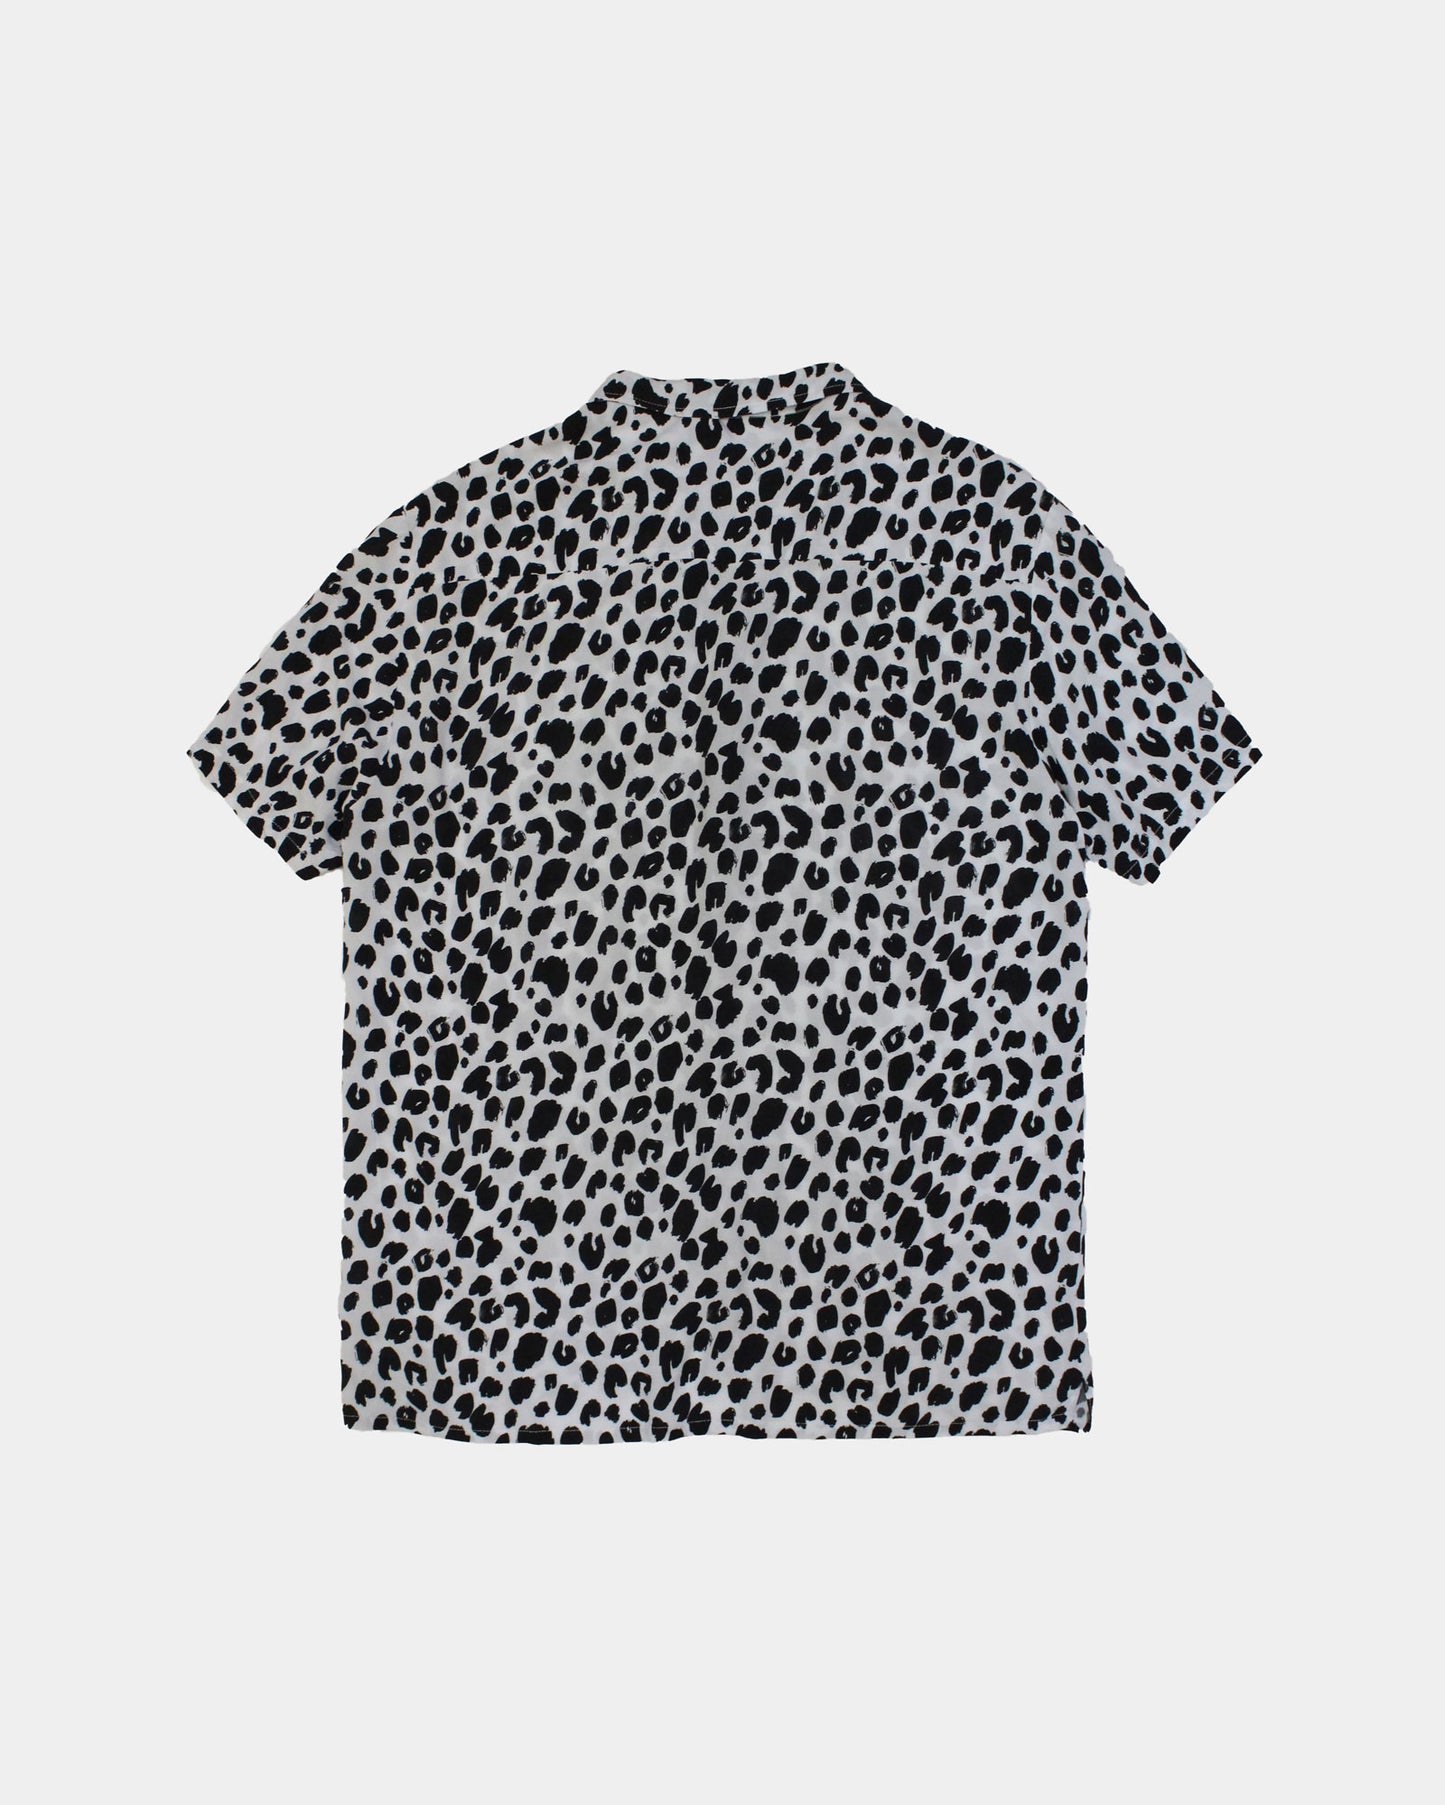 Cuban Shirt Leopard